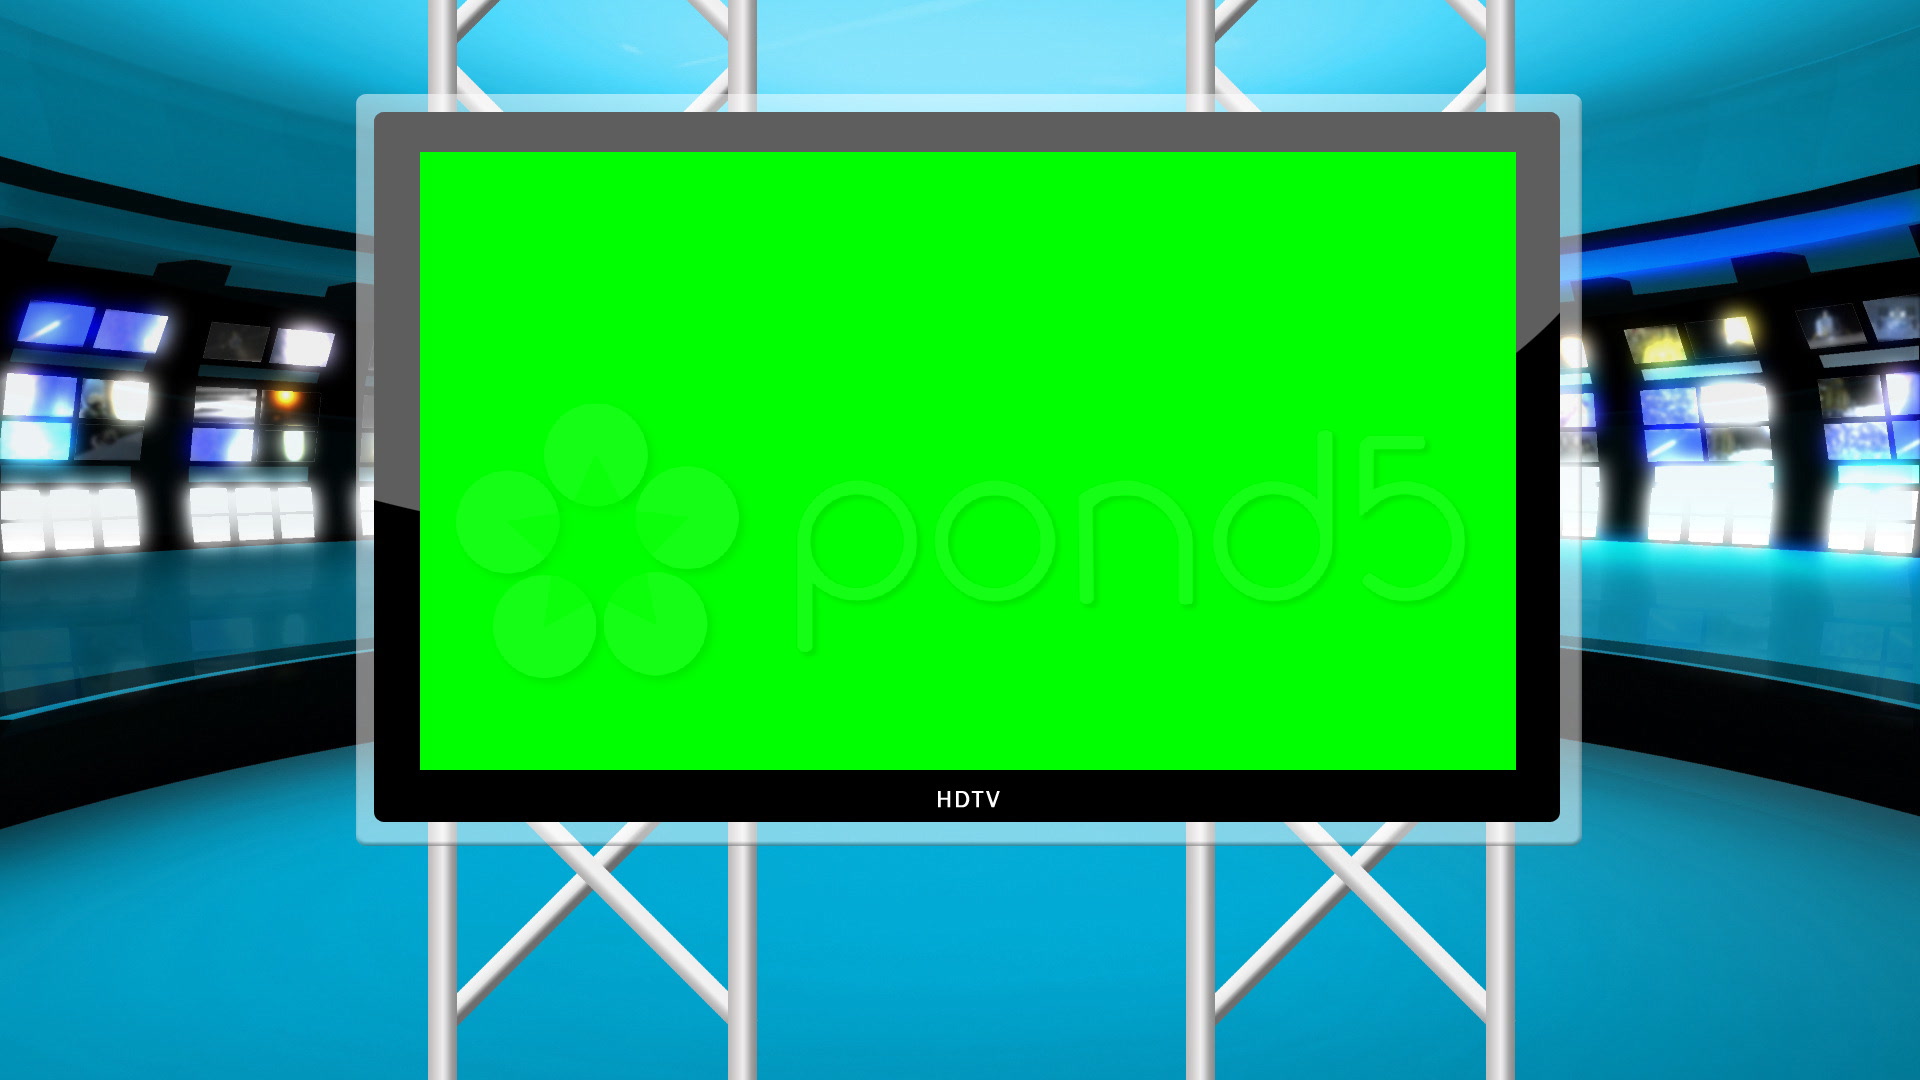 Green Screen Wallpaper